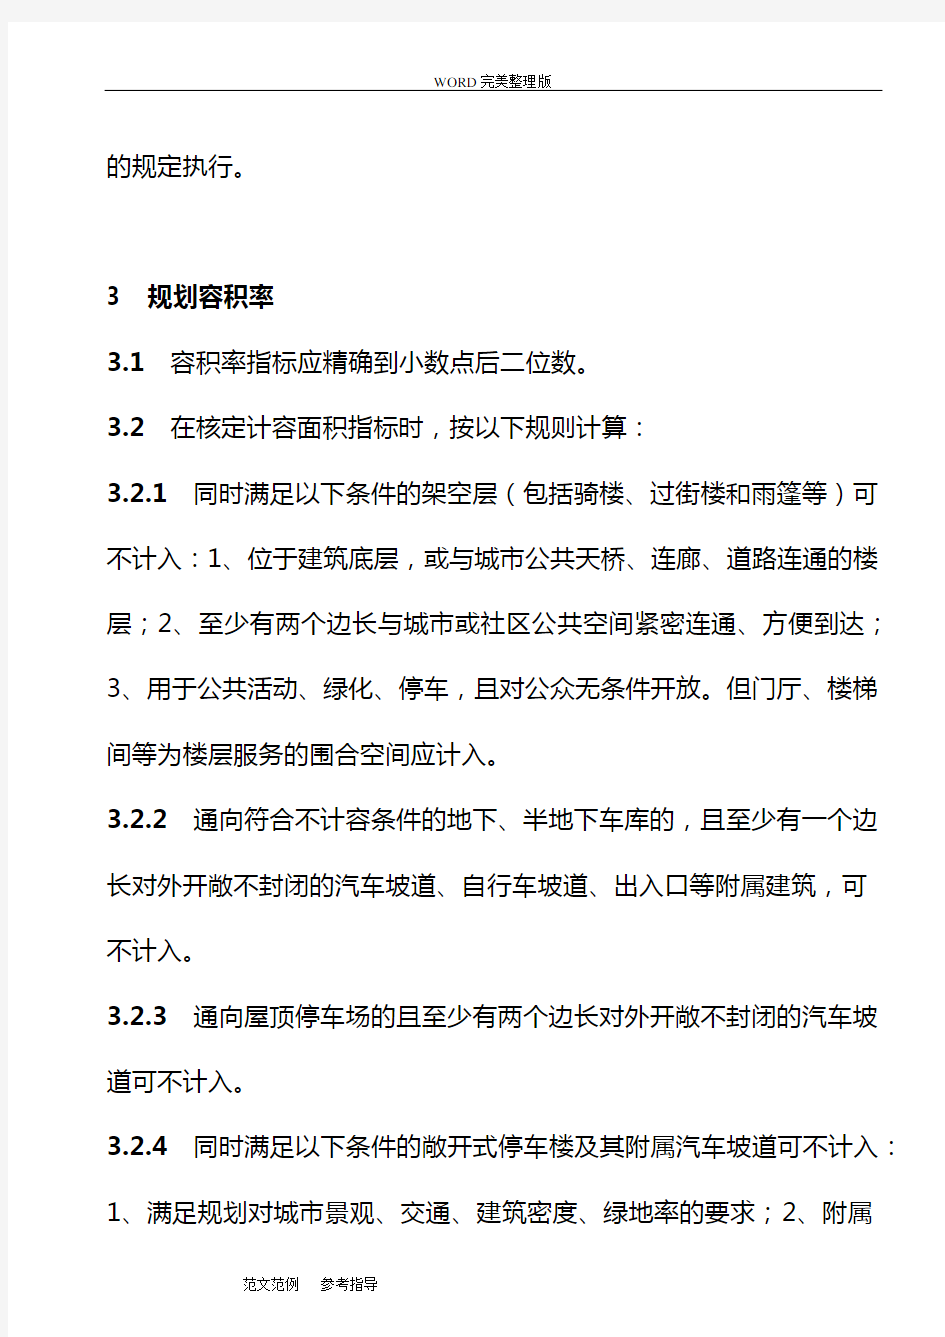 江苏省城市规划管理技术规定-苏州市实施细则之一“指标核定规则”(2015年版)